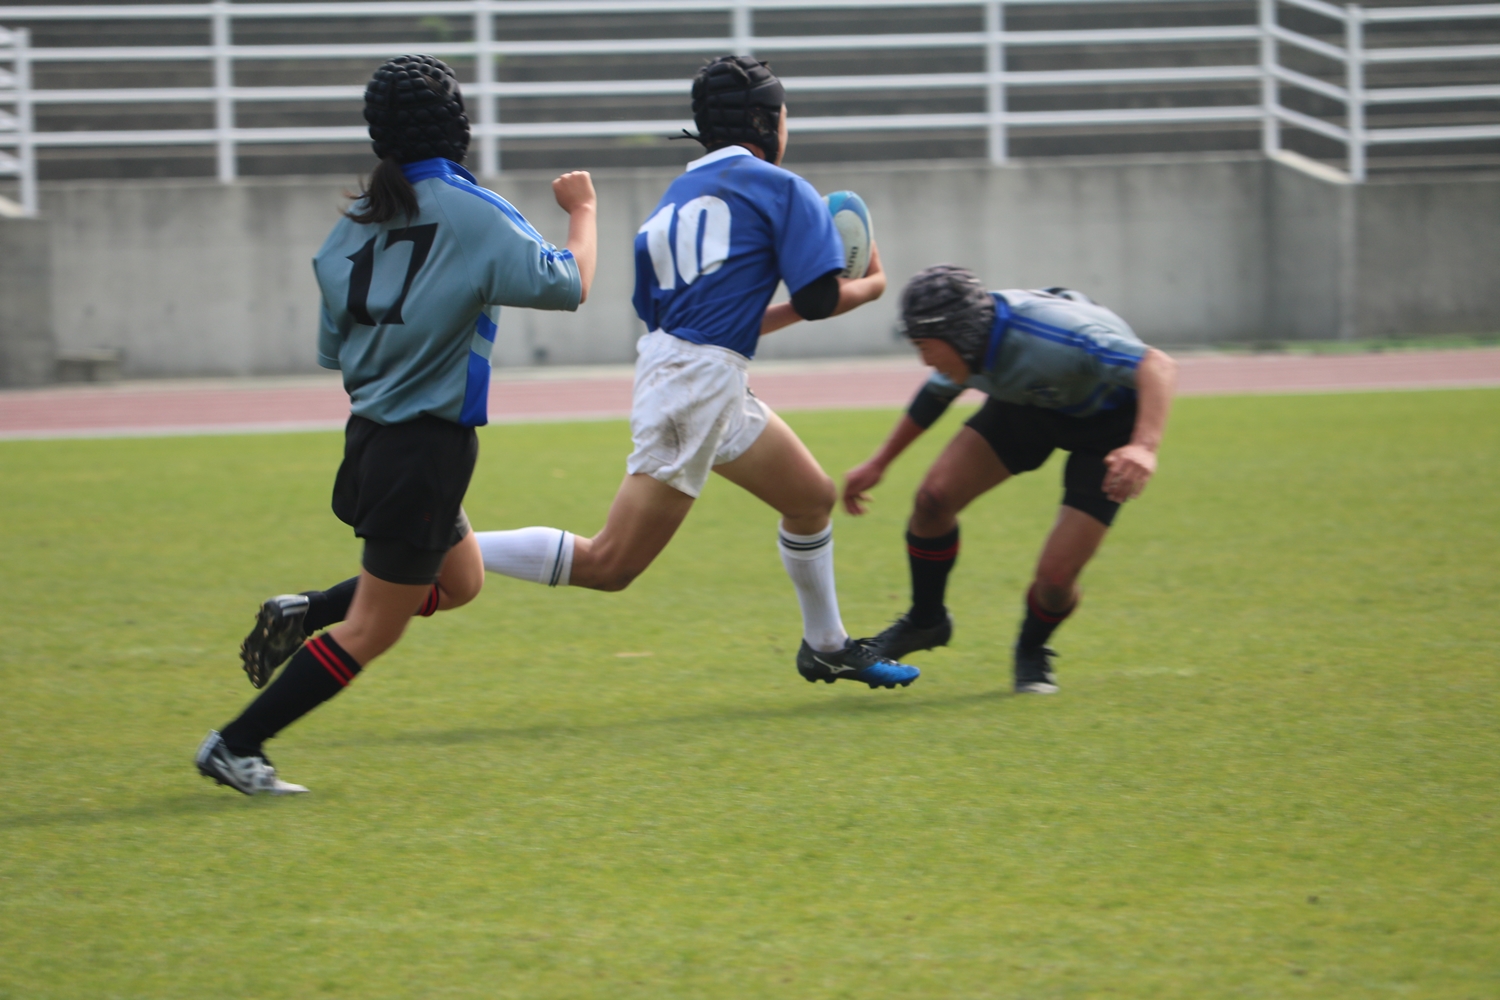 youngwave_kitakyusyu_rugby_school_simonosekikouryu2016040.JPG